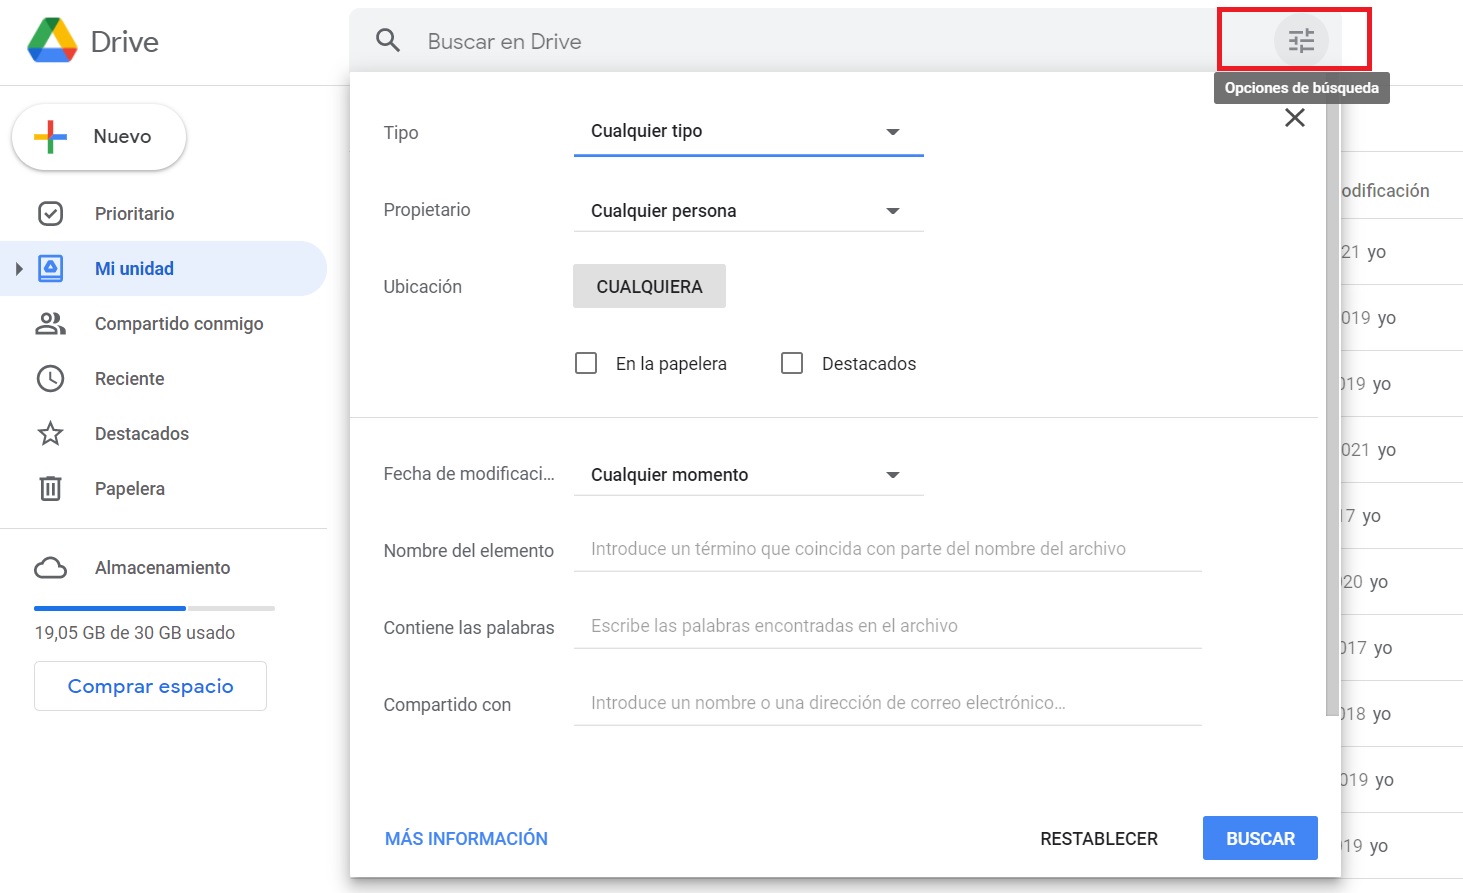 Google Drive ofrece muchas opciones para filtrar las búsquedas de contenido